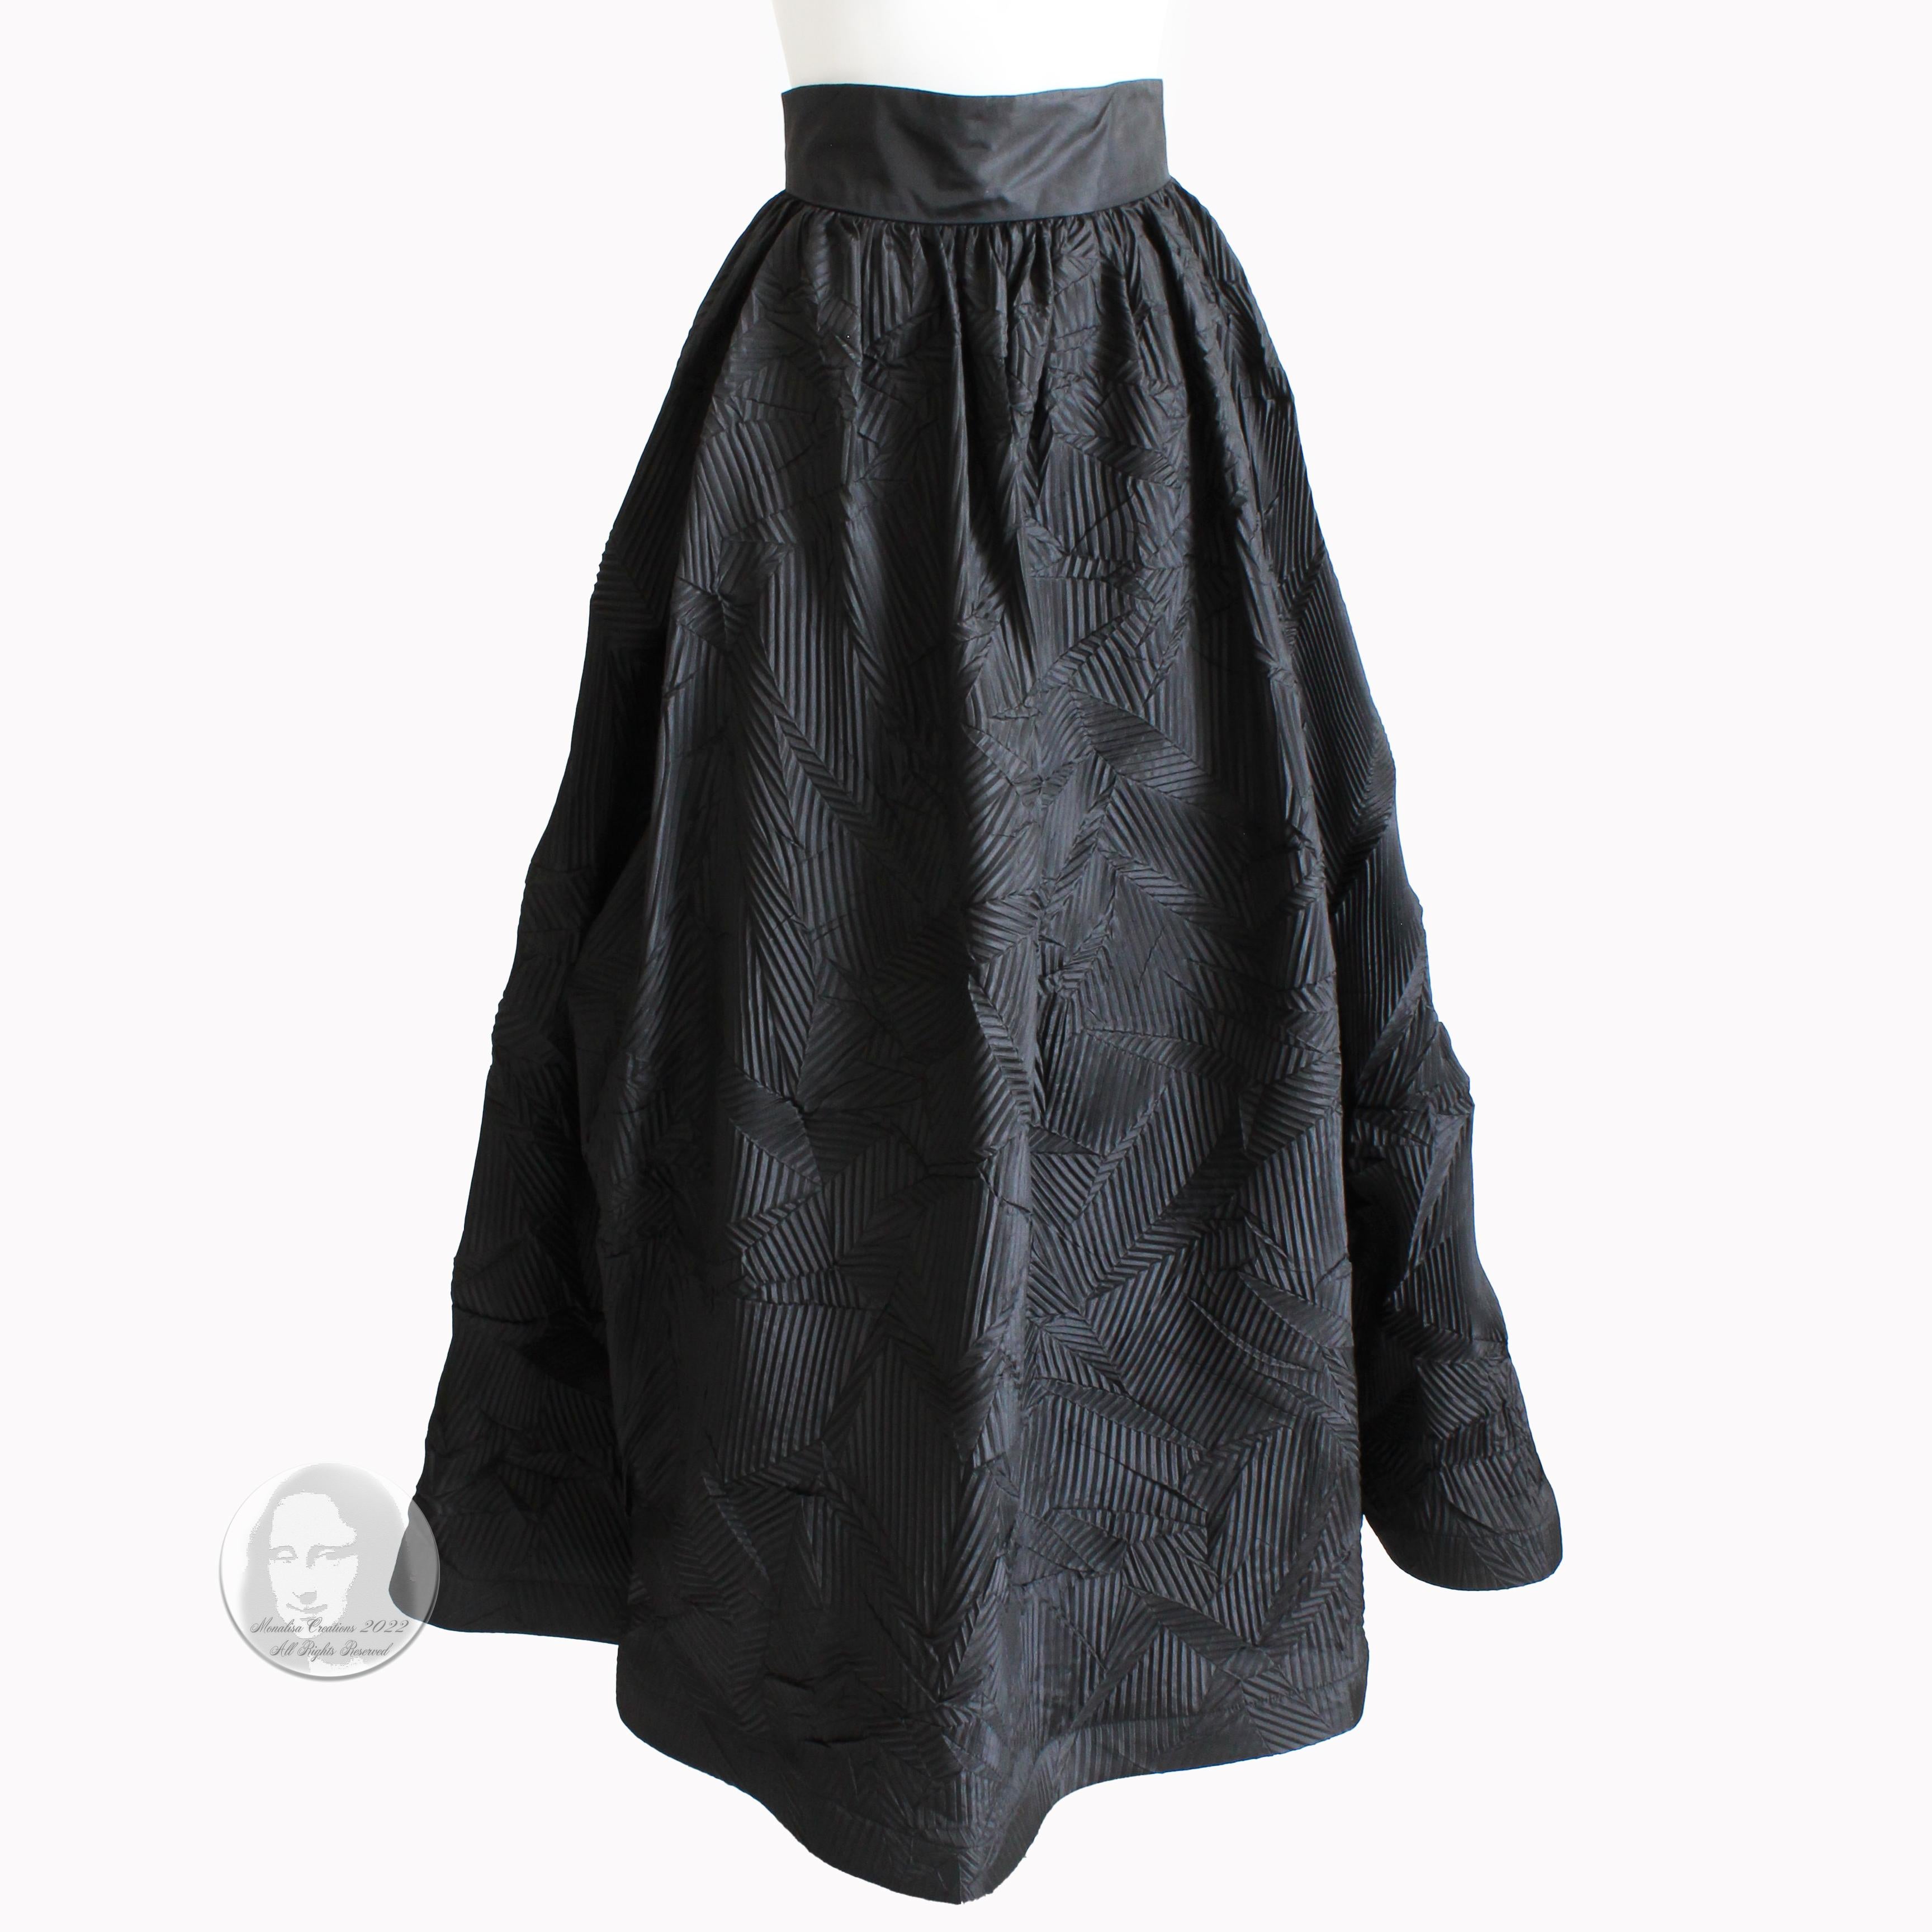 cyberpunk avant garde black skirt k20061